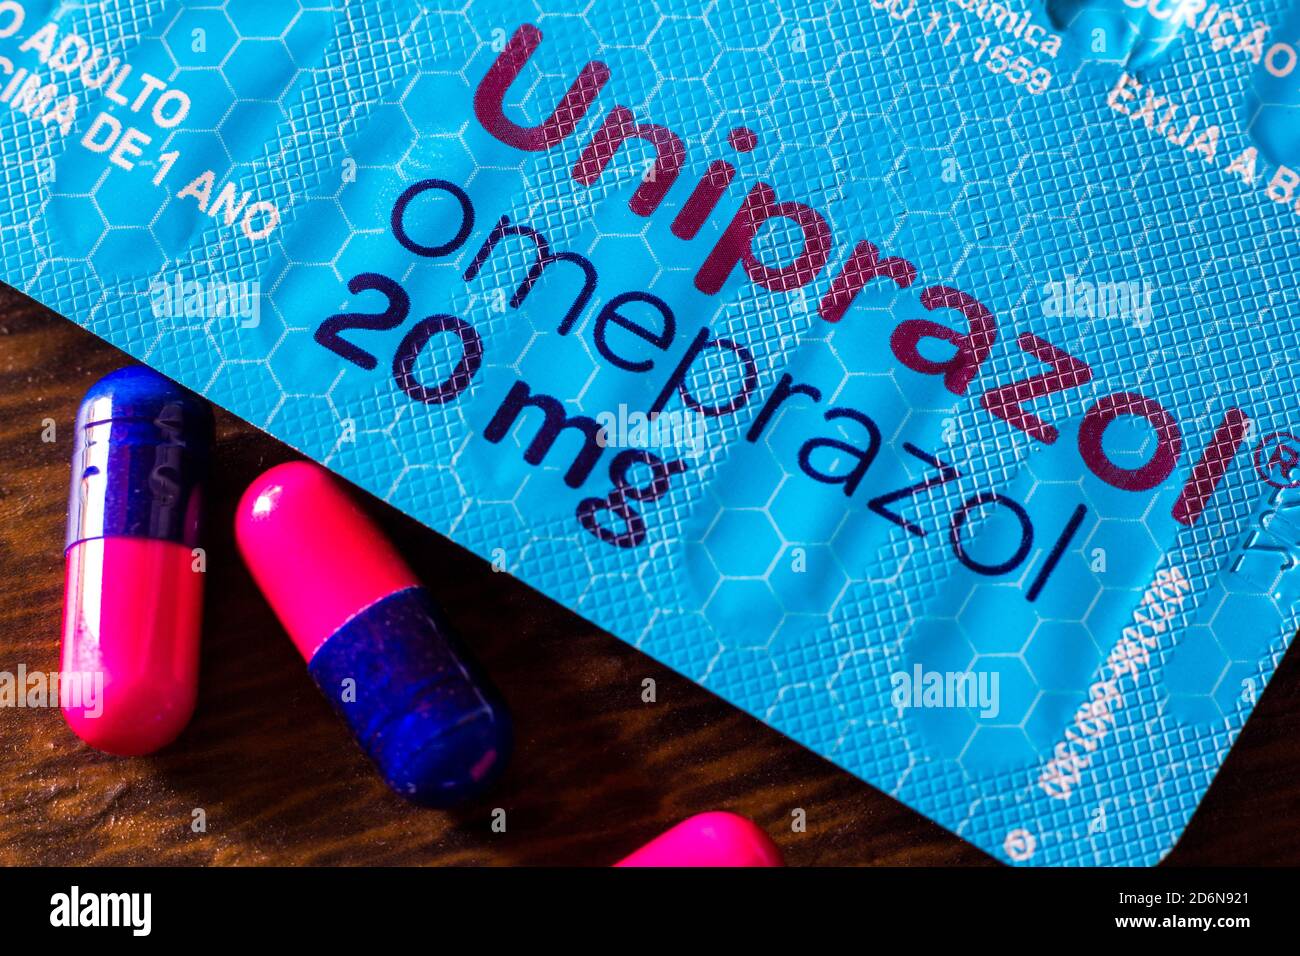 Dans cette photo illustration un paquet d'Omeprazol avec quelques pilules. Le médicament diminue la sécrétion gastrique. Banque D'Images